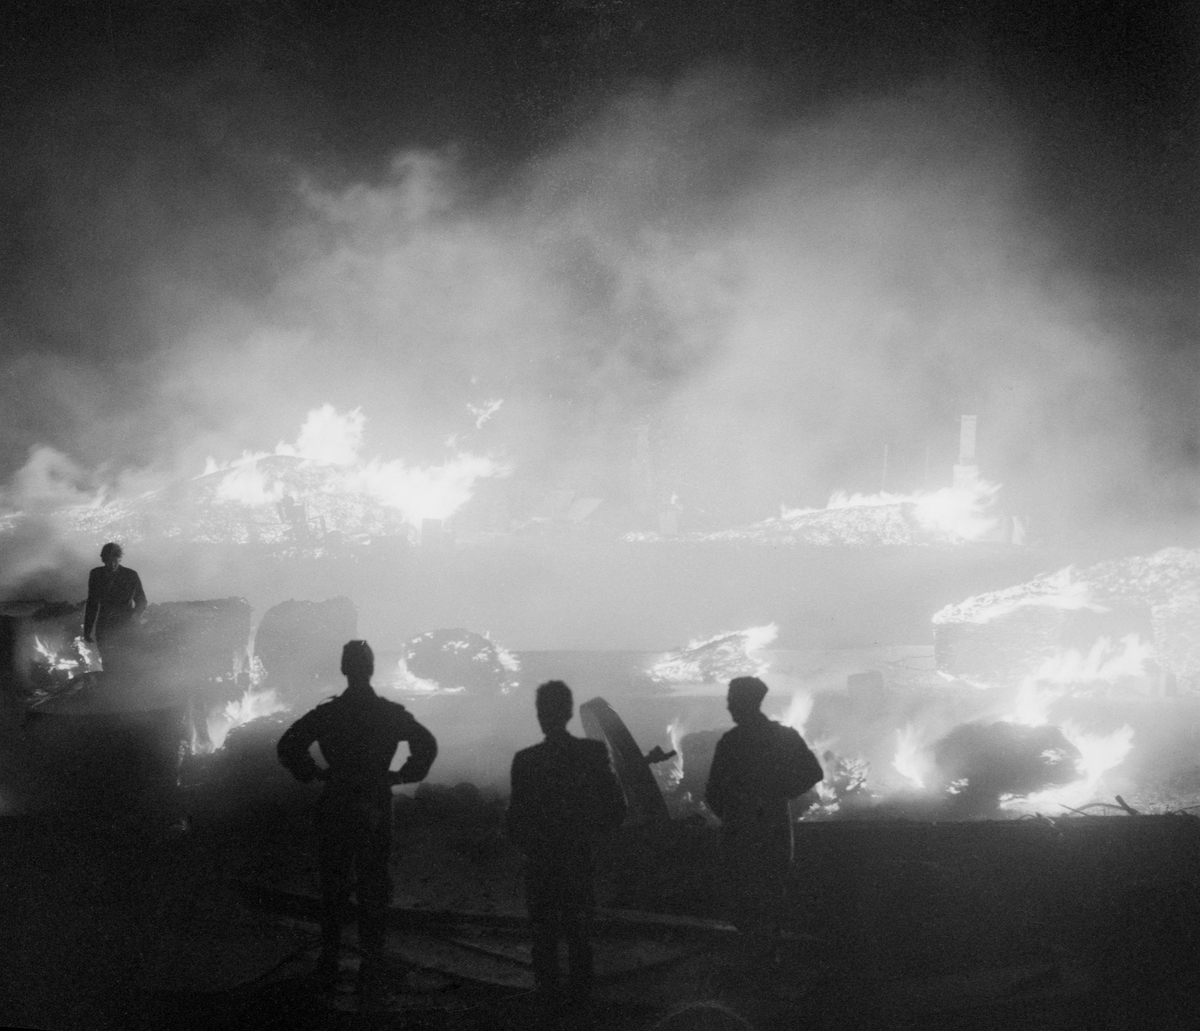 Vid 14-tiden den 27 augusti 1959 startade en brand vid en soptipp väster om Västervik. Inom kort gick branden på en halv mils bredd i frånlandsvind och en katastrof hotade kuststaden med havet som spärr i öster. Förutom Västerviks yrkesbrandkår, borgarbrandkår och olika industribrandkårer deltog i släckningsarbetet brandavdelningar från Norrköping, Linköping, Överum, Gamleby, Hjorted, Hallingeberg och Gladhammar. Från Linköpingsgarnisonen rekvirerades också militär hjälp med 375 man. Från F3 dirigerades även ett flygplan till Västervik med radiobil för att leda släckningsarbetet. Ett väldigt rökmoln fick solen att lysa mattröd över staden och en spökstämning spreds på gatorna. Man förberedde att flera hundra familjer skulle få lämna sina hem vid den omedelbara eldfronten. Med en heroiskt och samfälld insats hejdades dock eldens framfart efterhand och stadens invånare kunde andas ut.